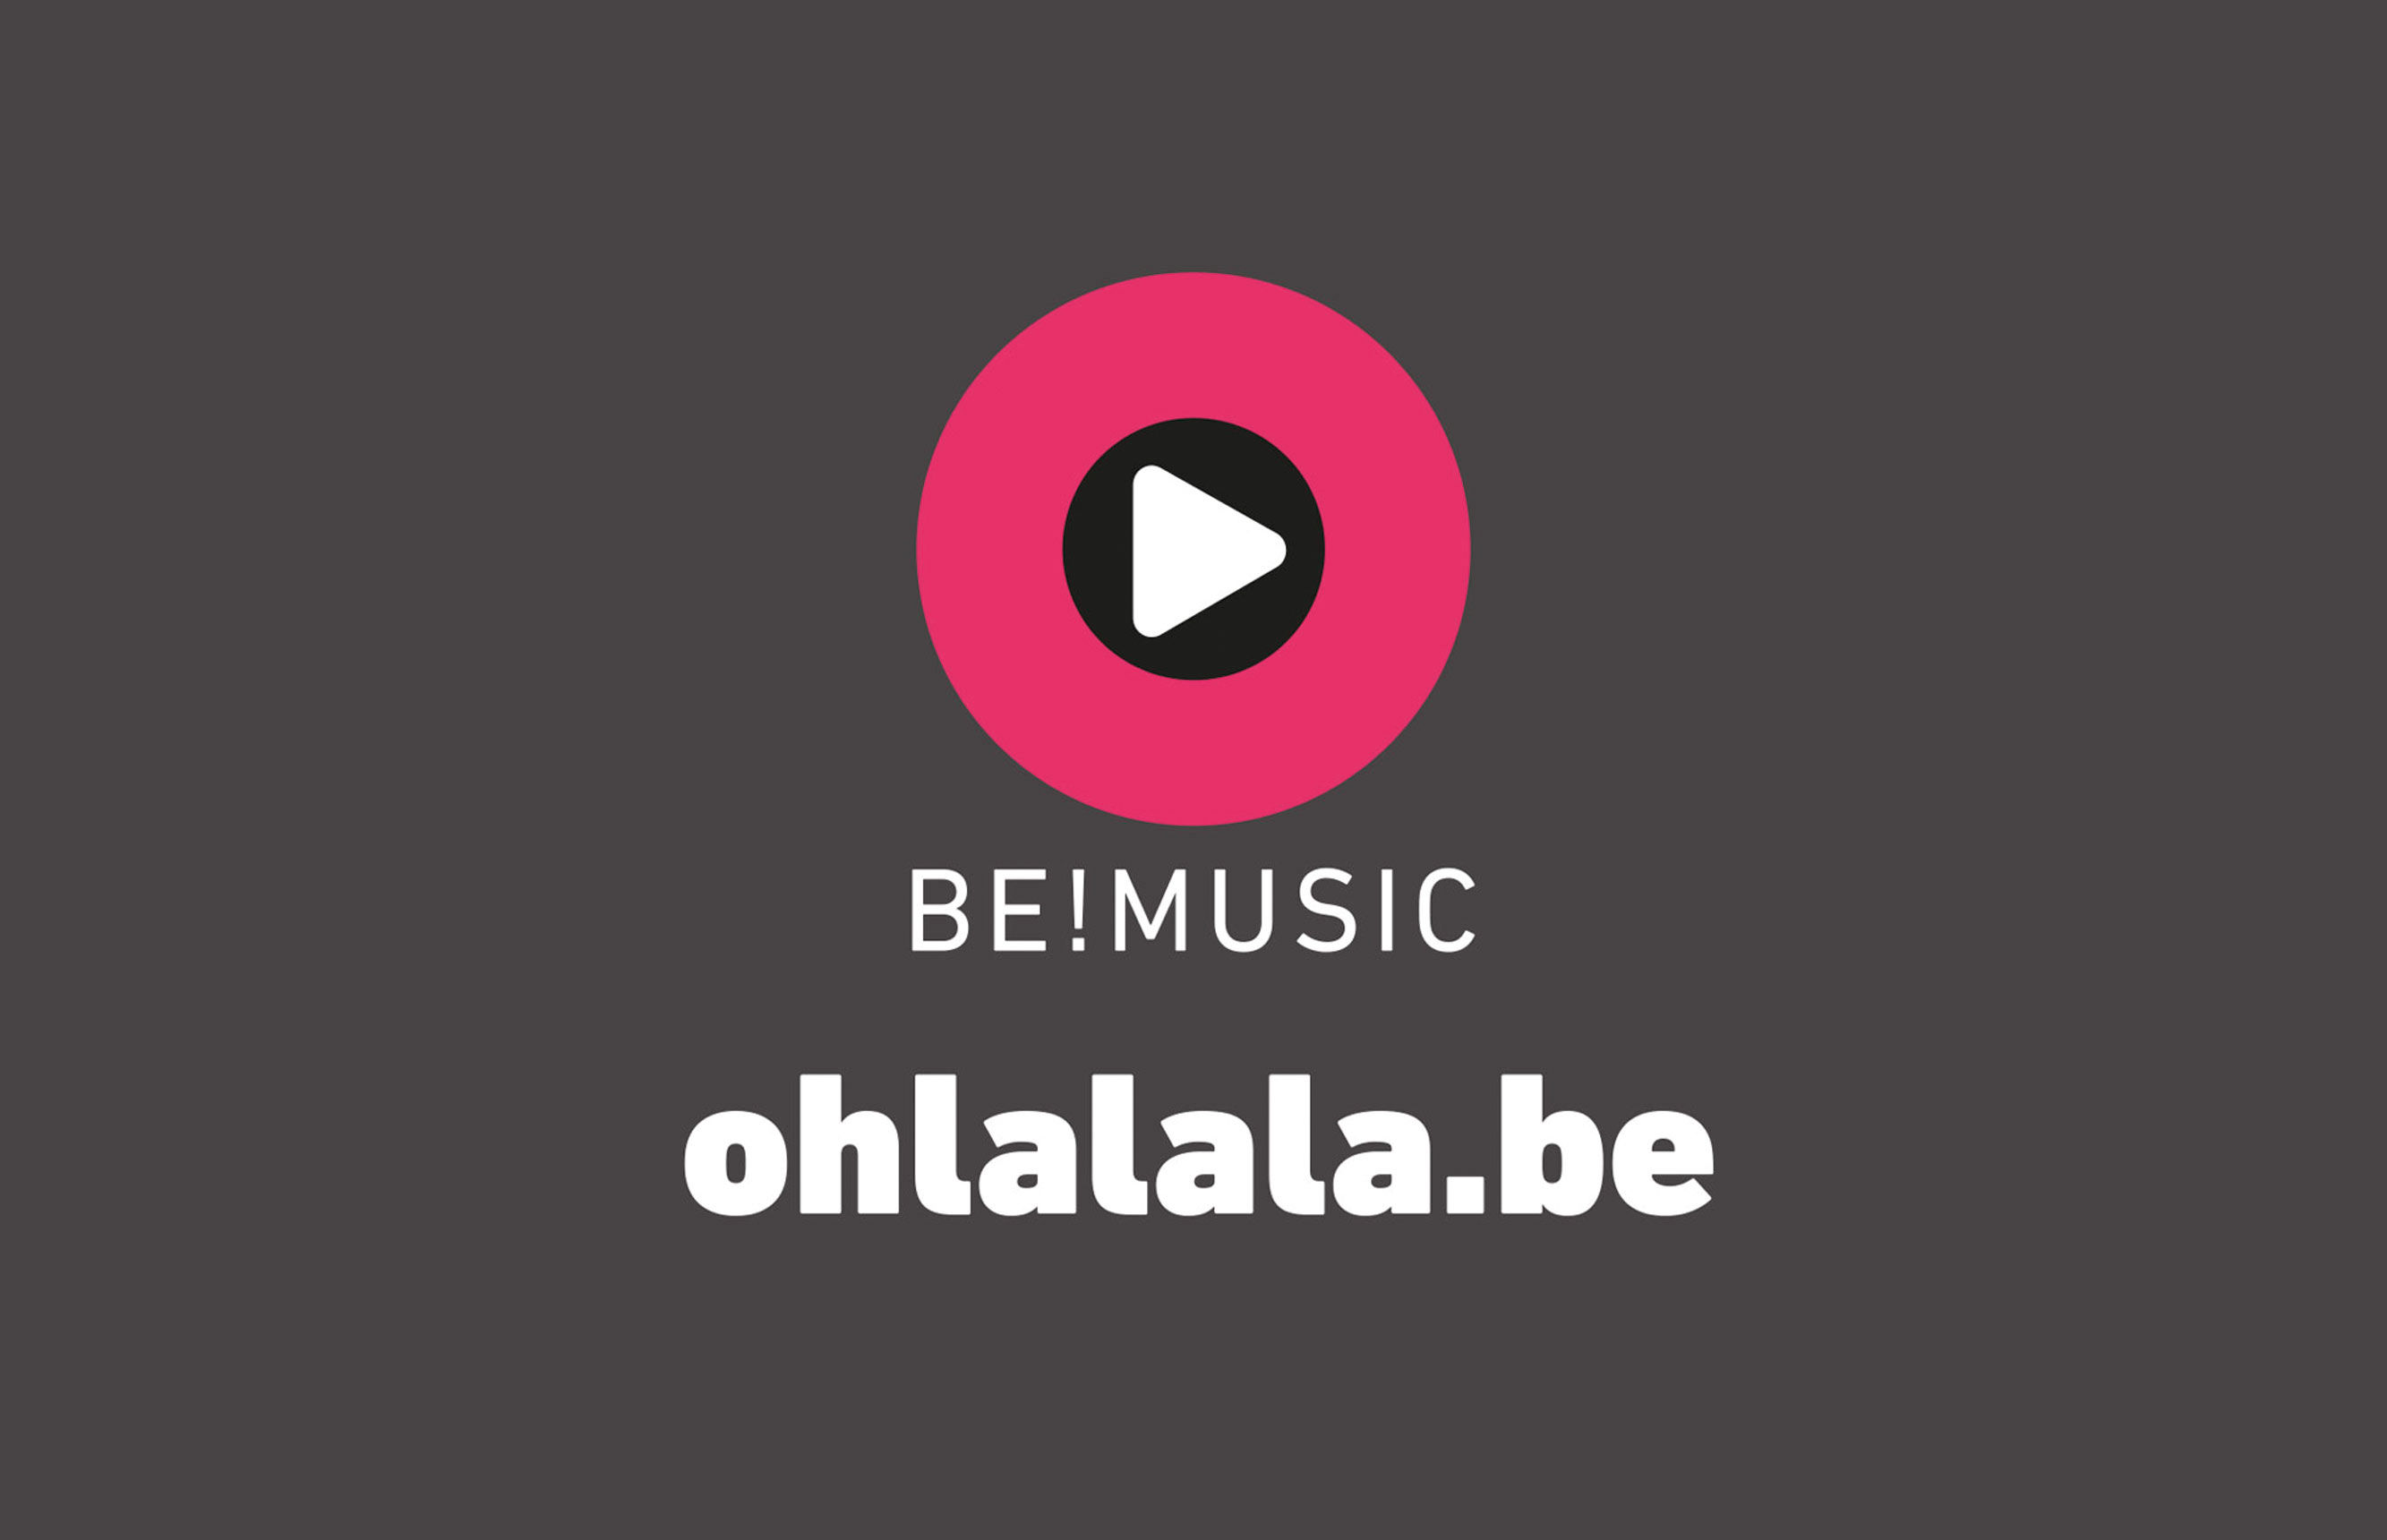 Ontdek het gloednieuwe Belgische muziekplatform Ohlalala